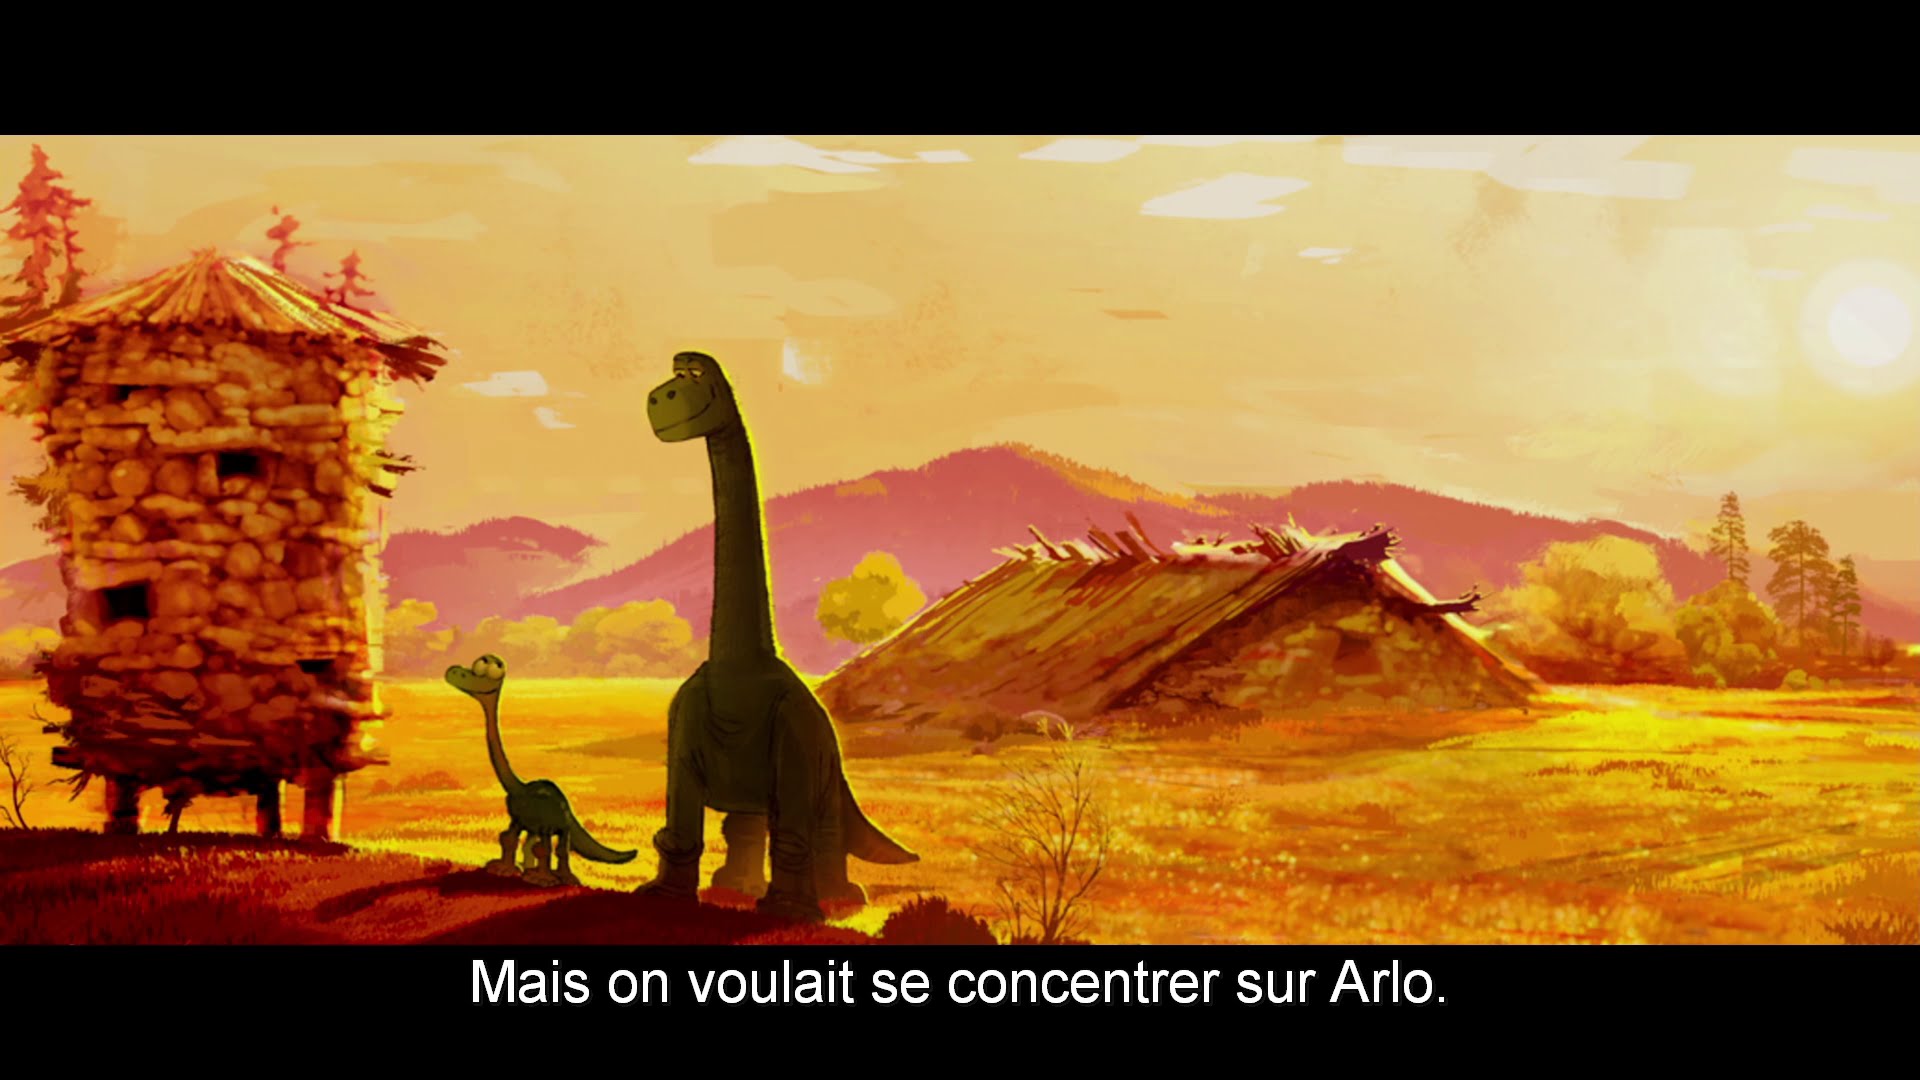 Le Voyage d'Arlo (Film, 2015) — CinéSérie